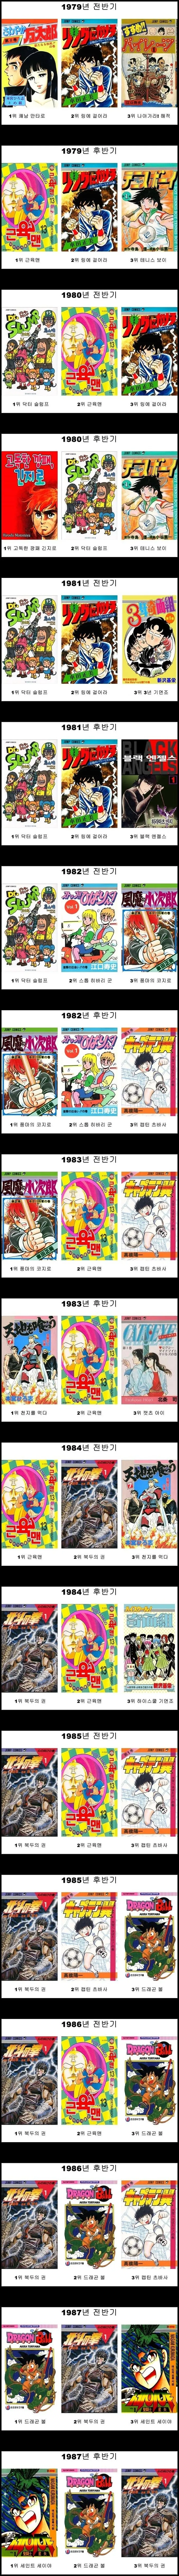 일본 주간소년점프 년도별 만화 판매량 순위정보 1979~1987년 정보